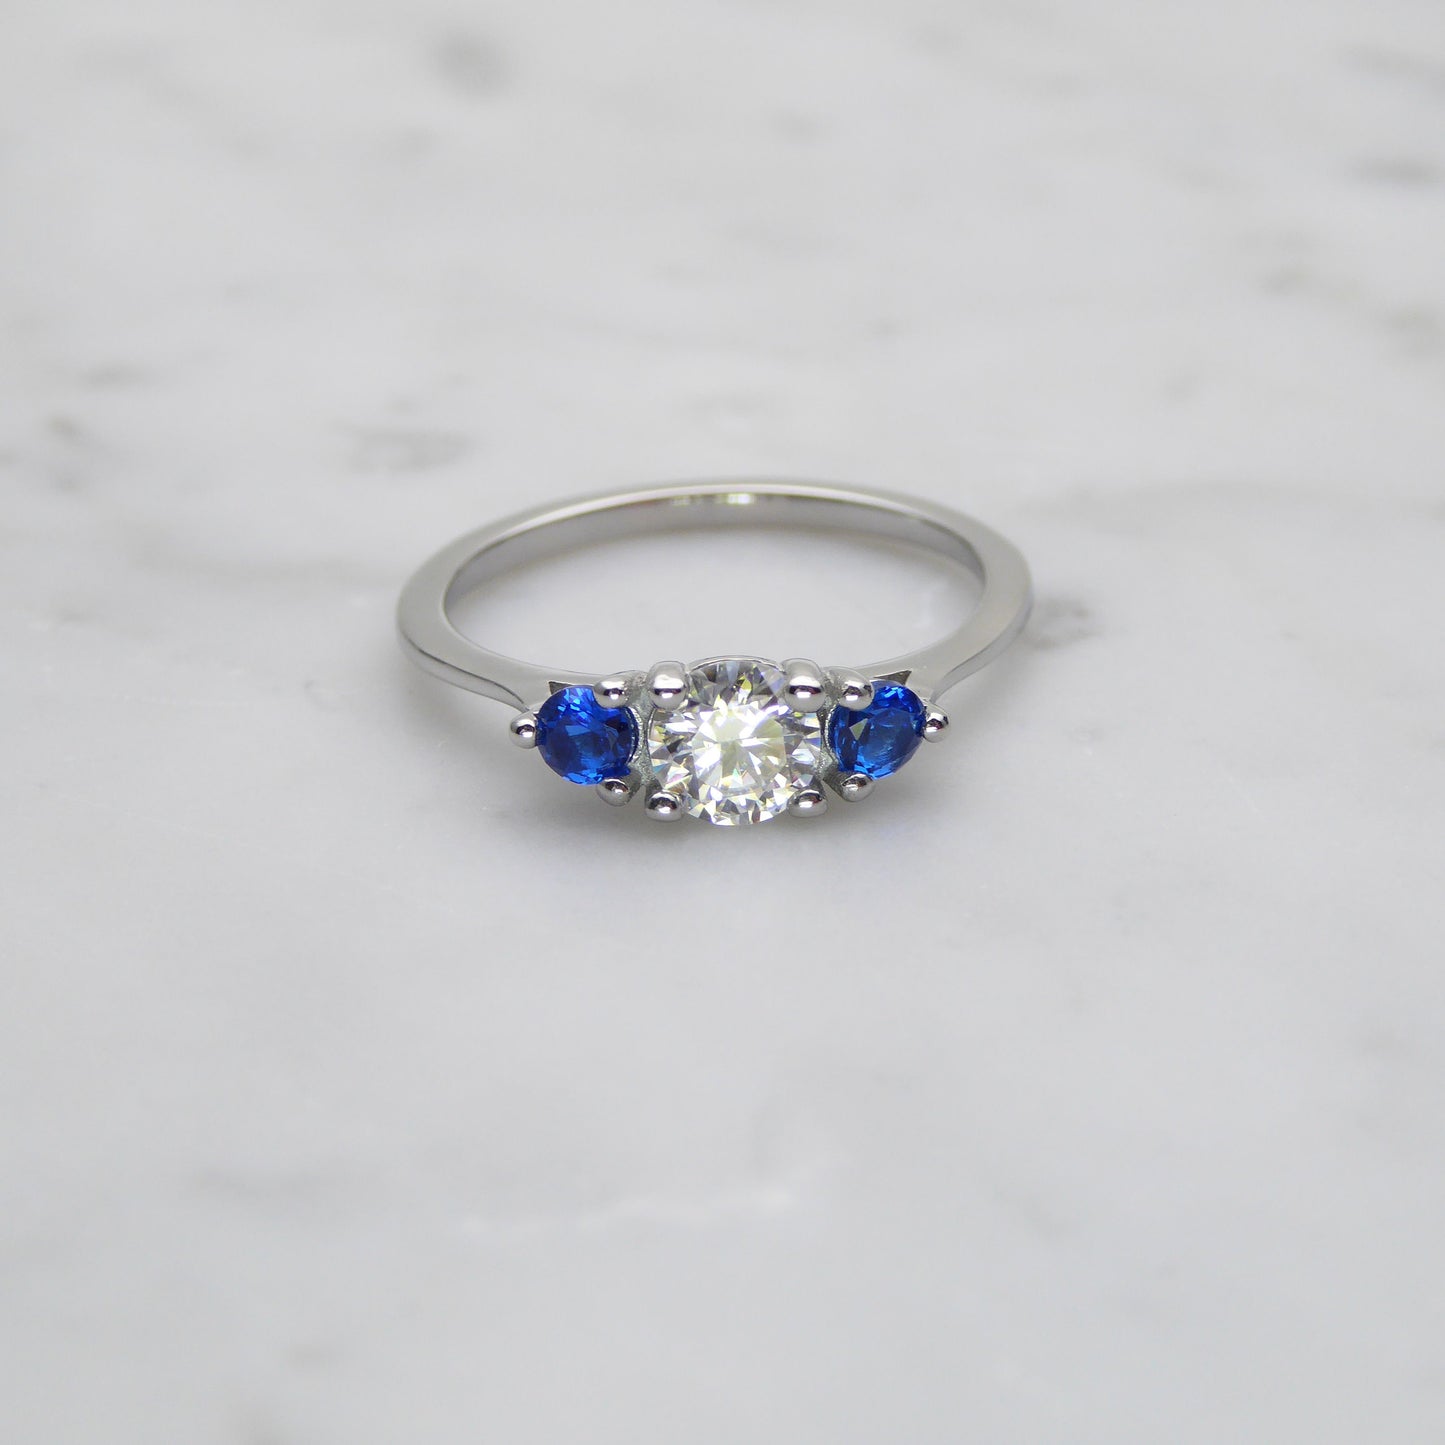 Genuine moissanite & Blue Topaz 3 stone Trilogy Ring in White Gold or Titanium  -  engagement ring - handmade ring